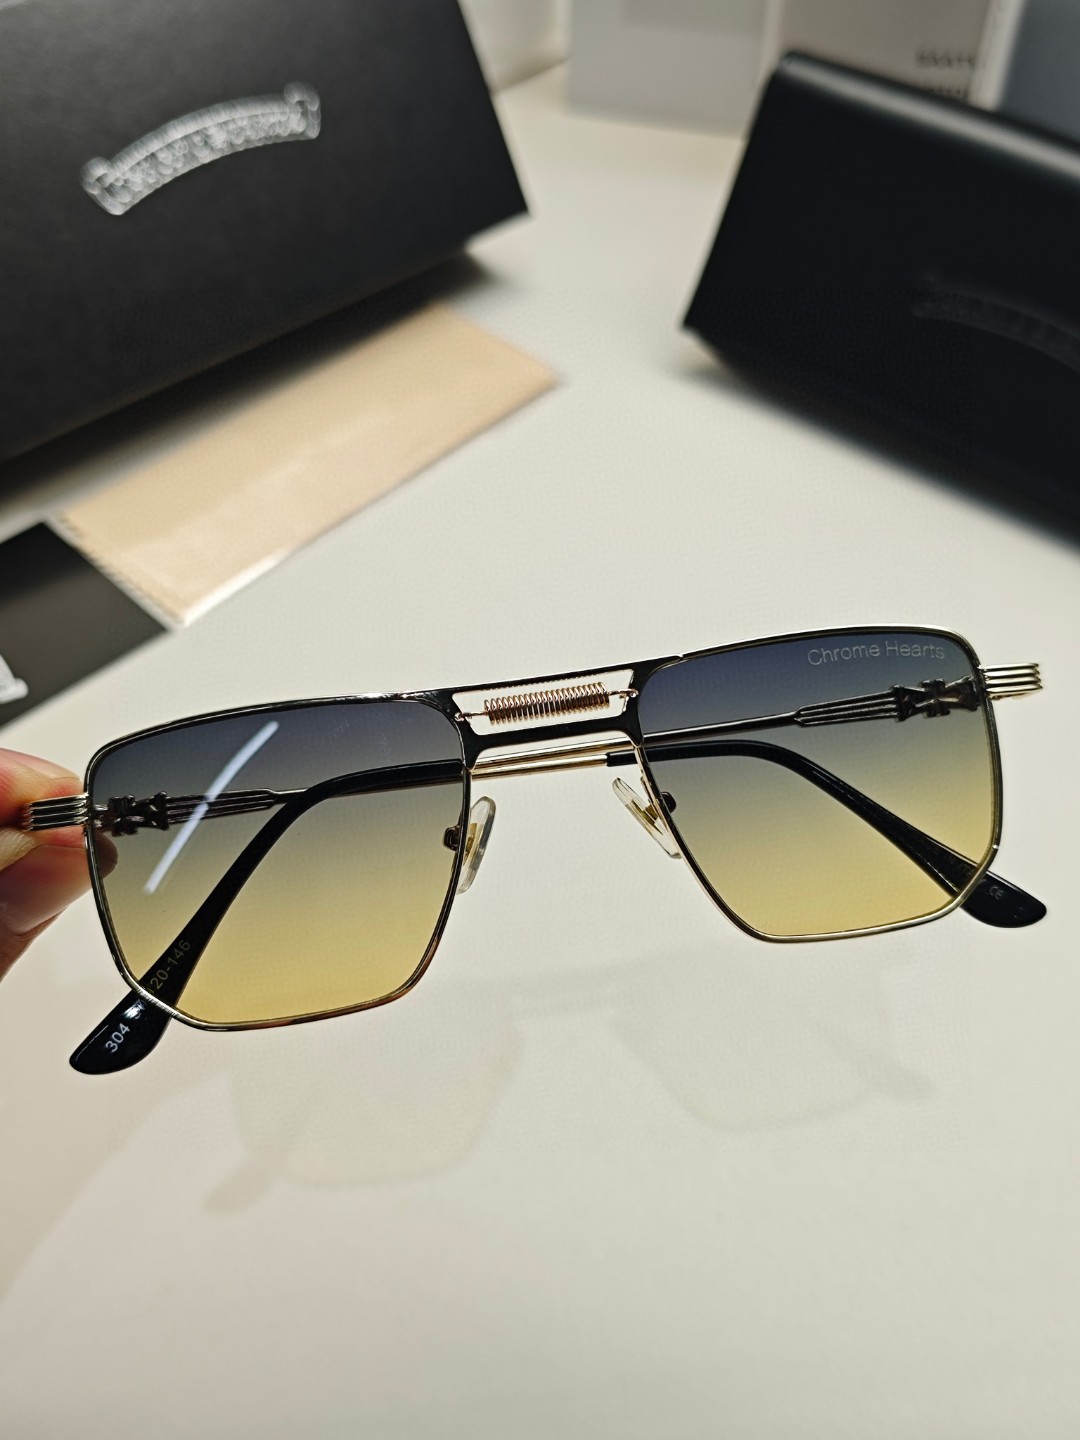 ChromeHearts克罗心2024新款超小方形复古小镜片墨镜迷你小眼镜男潮网红方框太阳镜